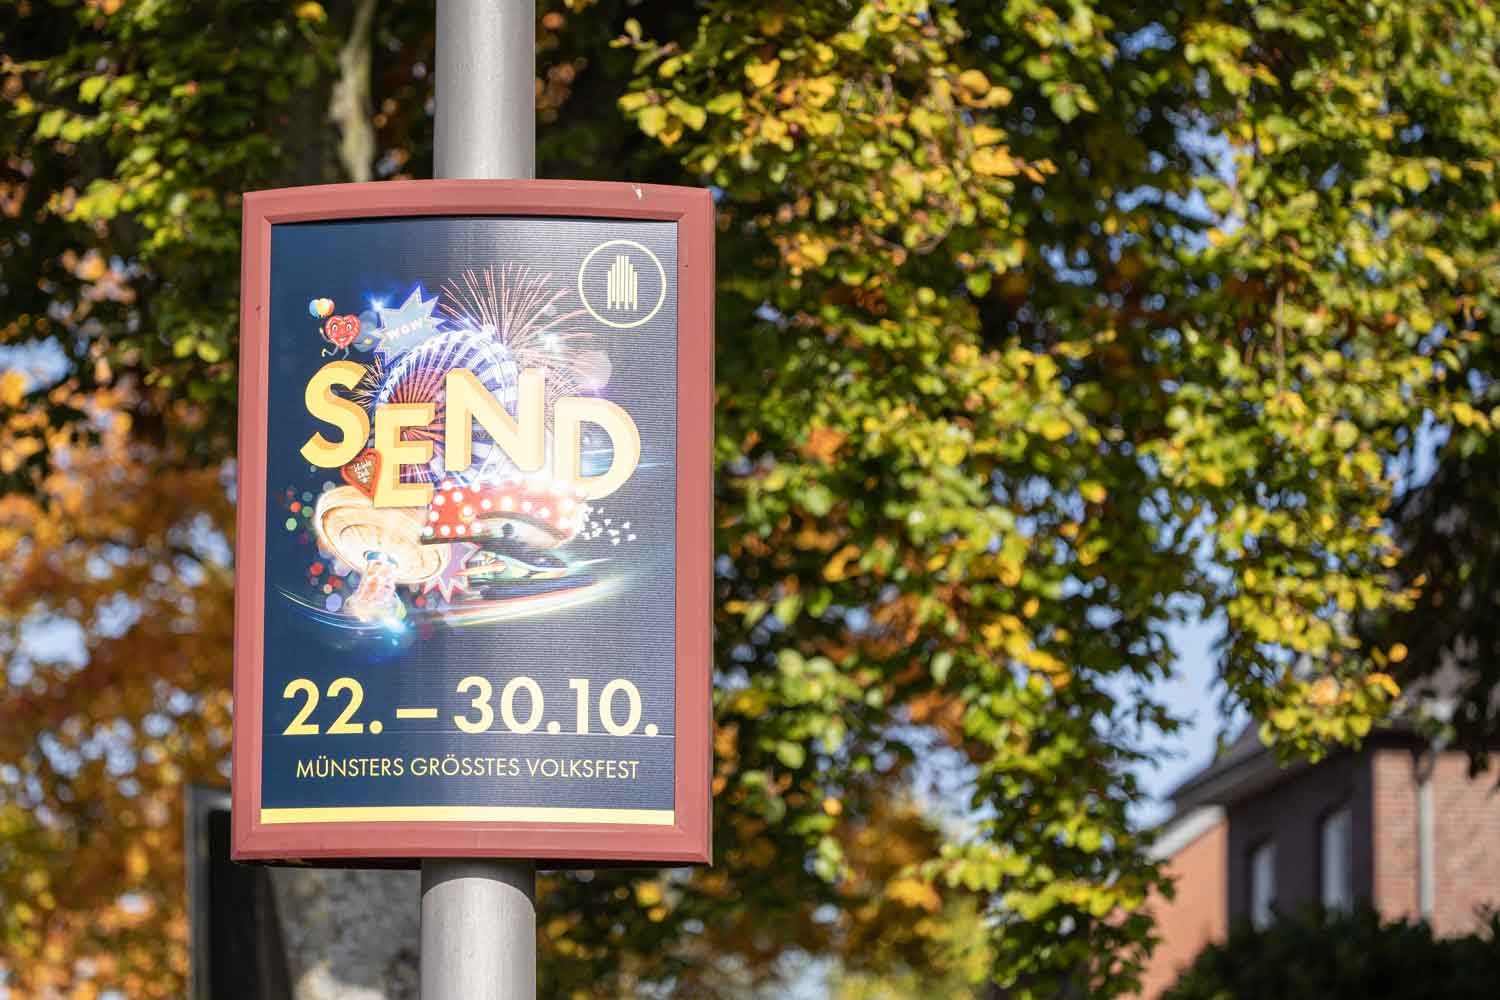 Plakat für den Herbstsend in Münster vom 22.-30.10.2022, aufgenommen in Münster-Wolbeck.